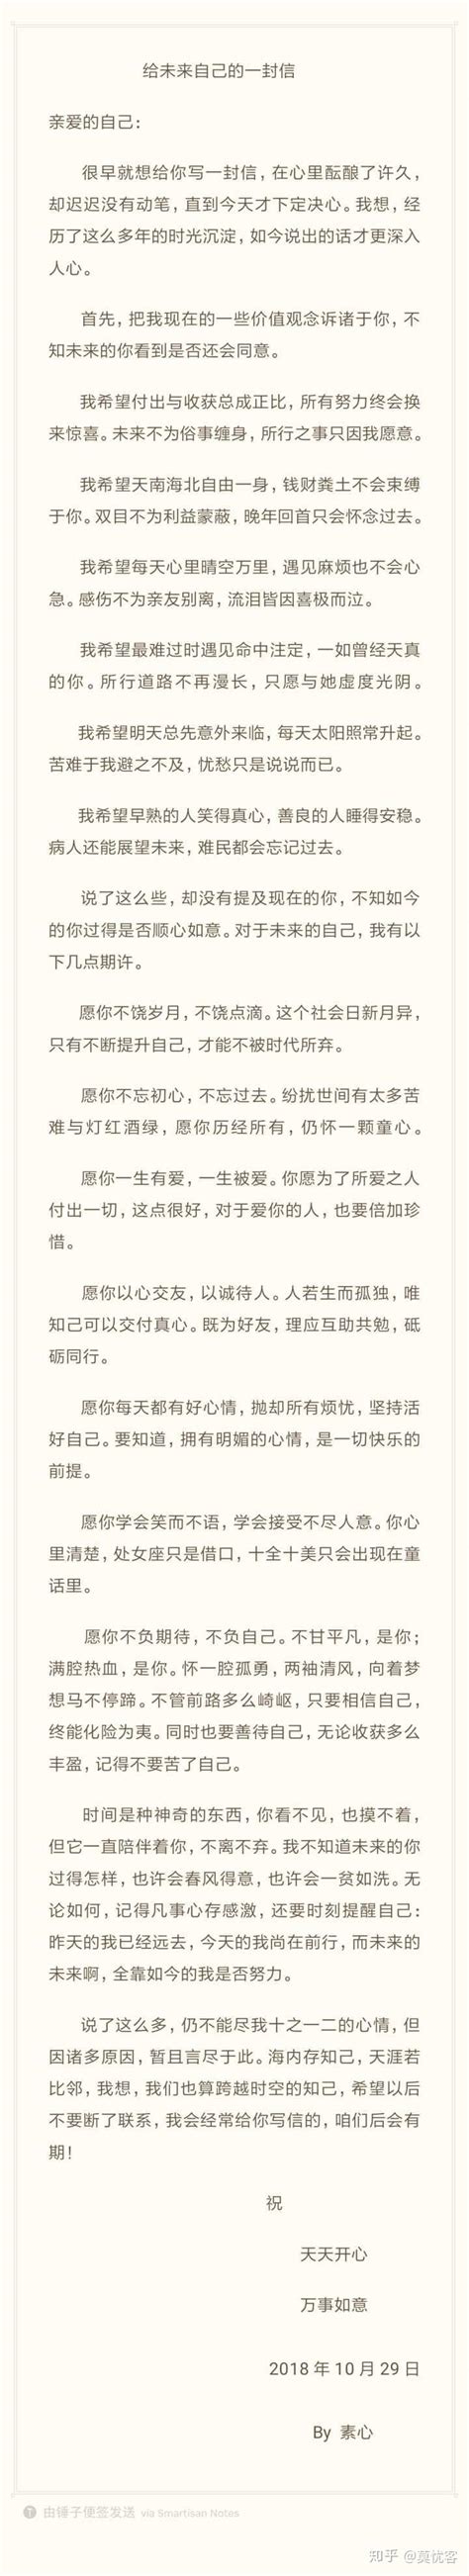 回顾 | 写给华商的一封信-广州华商学院文学院